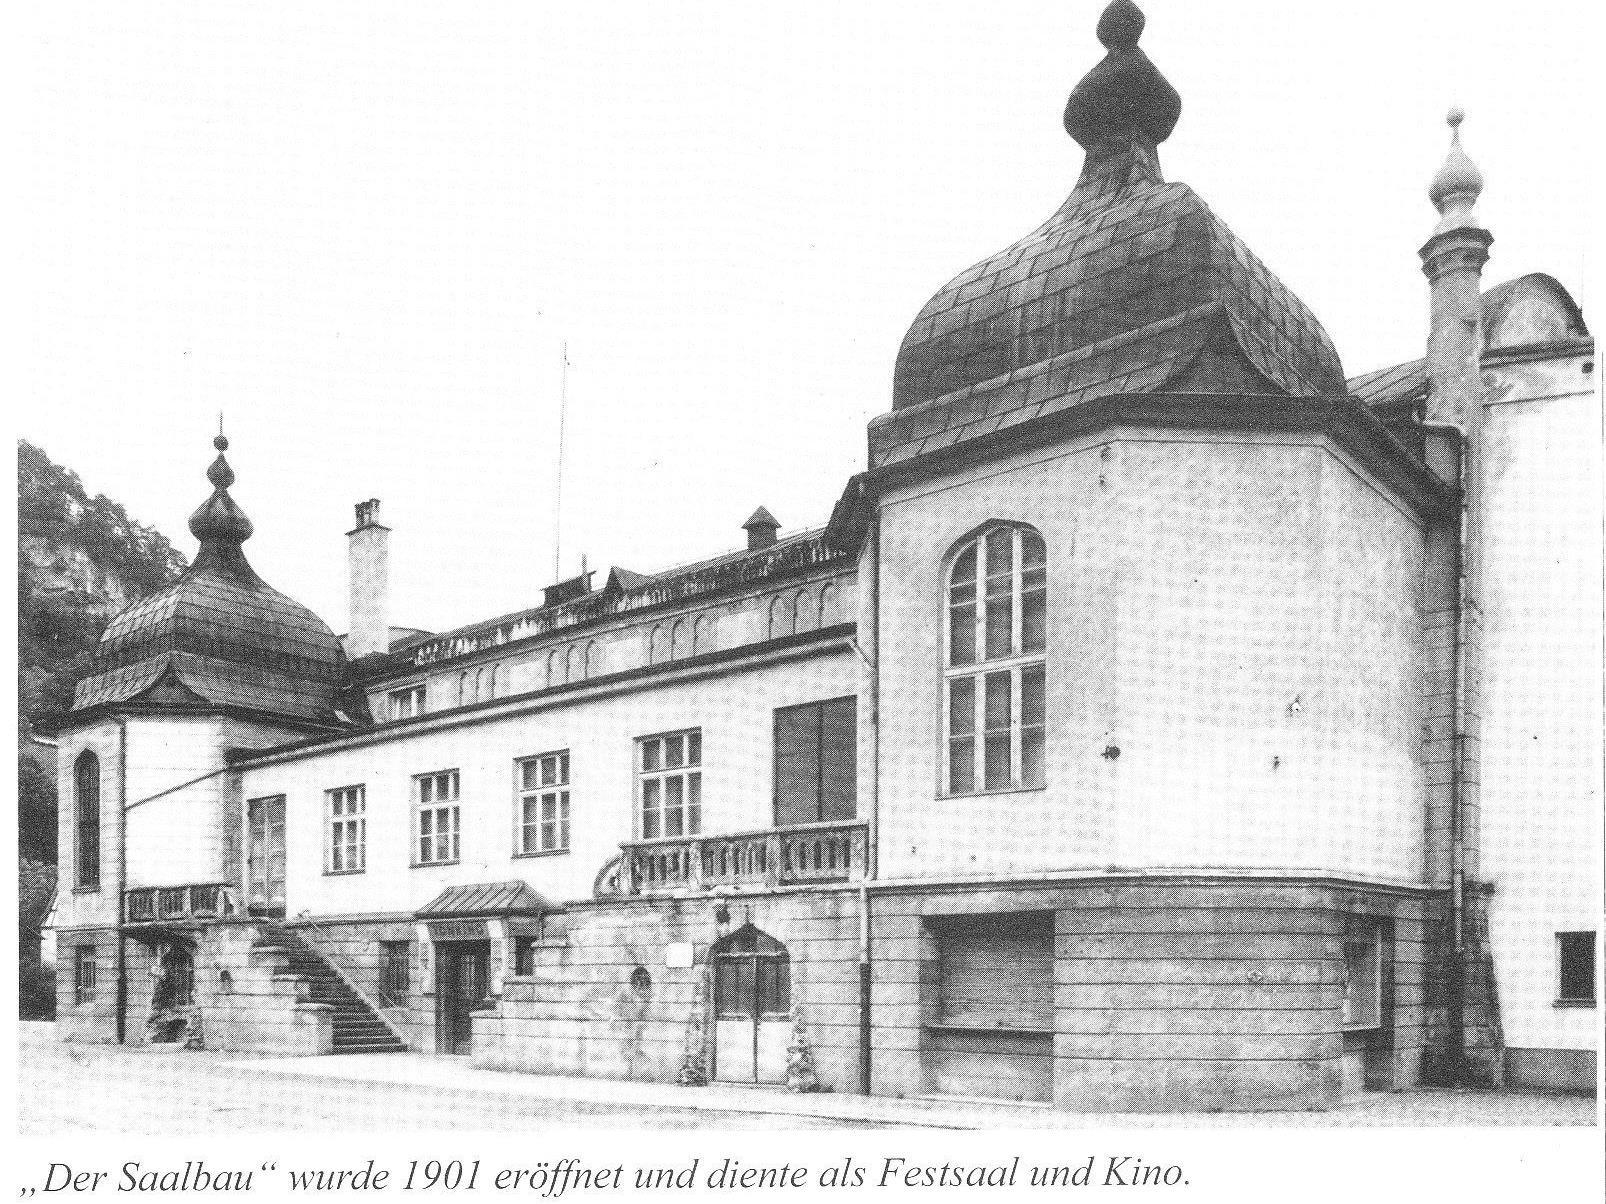 Das in seiner Architektur an eine Synagoge erinnernde Saalbaukino hat in seinen Anfängen das kulturelle Leben der Stadt Feldkirch nachhaltend mitgeprägt.